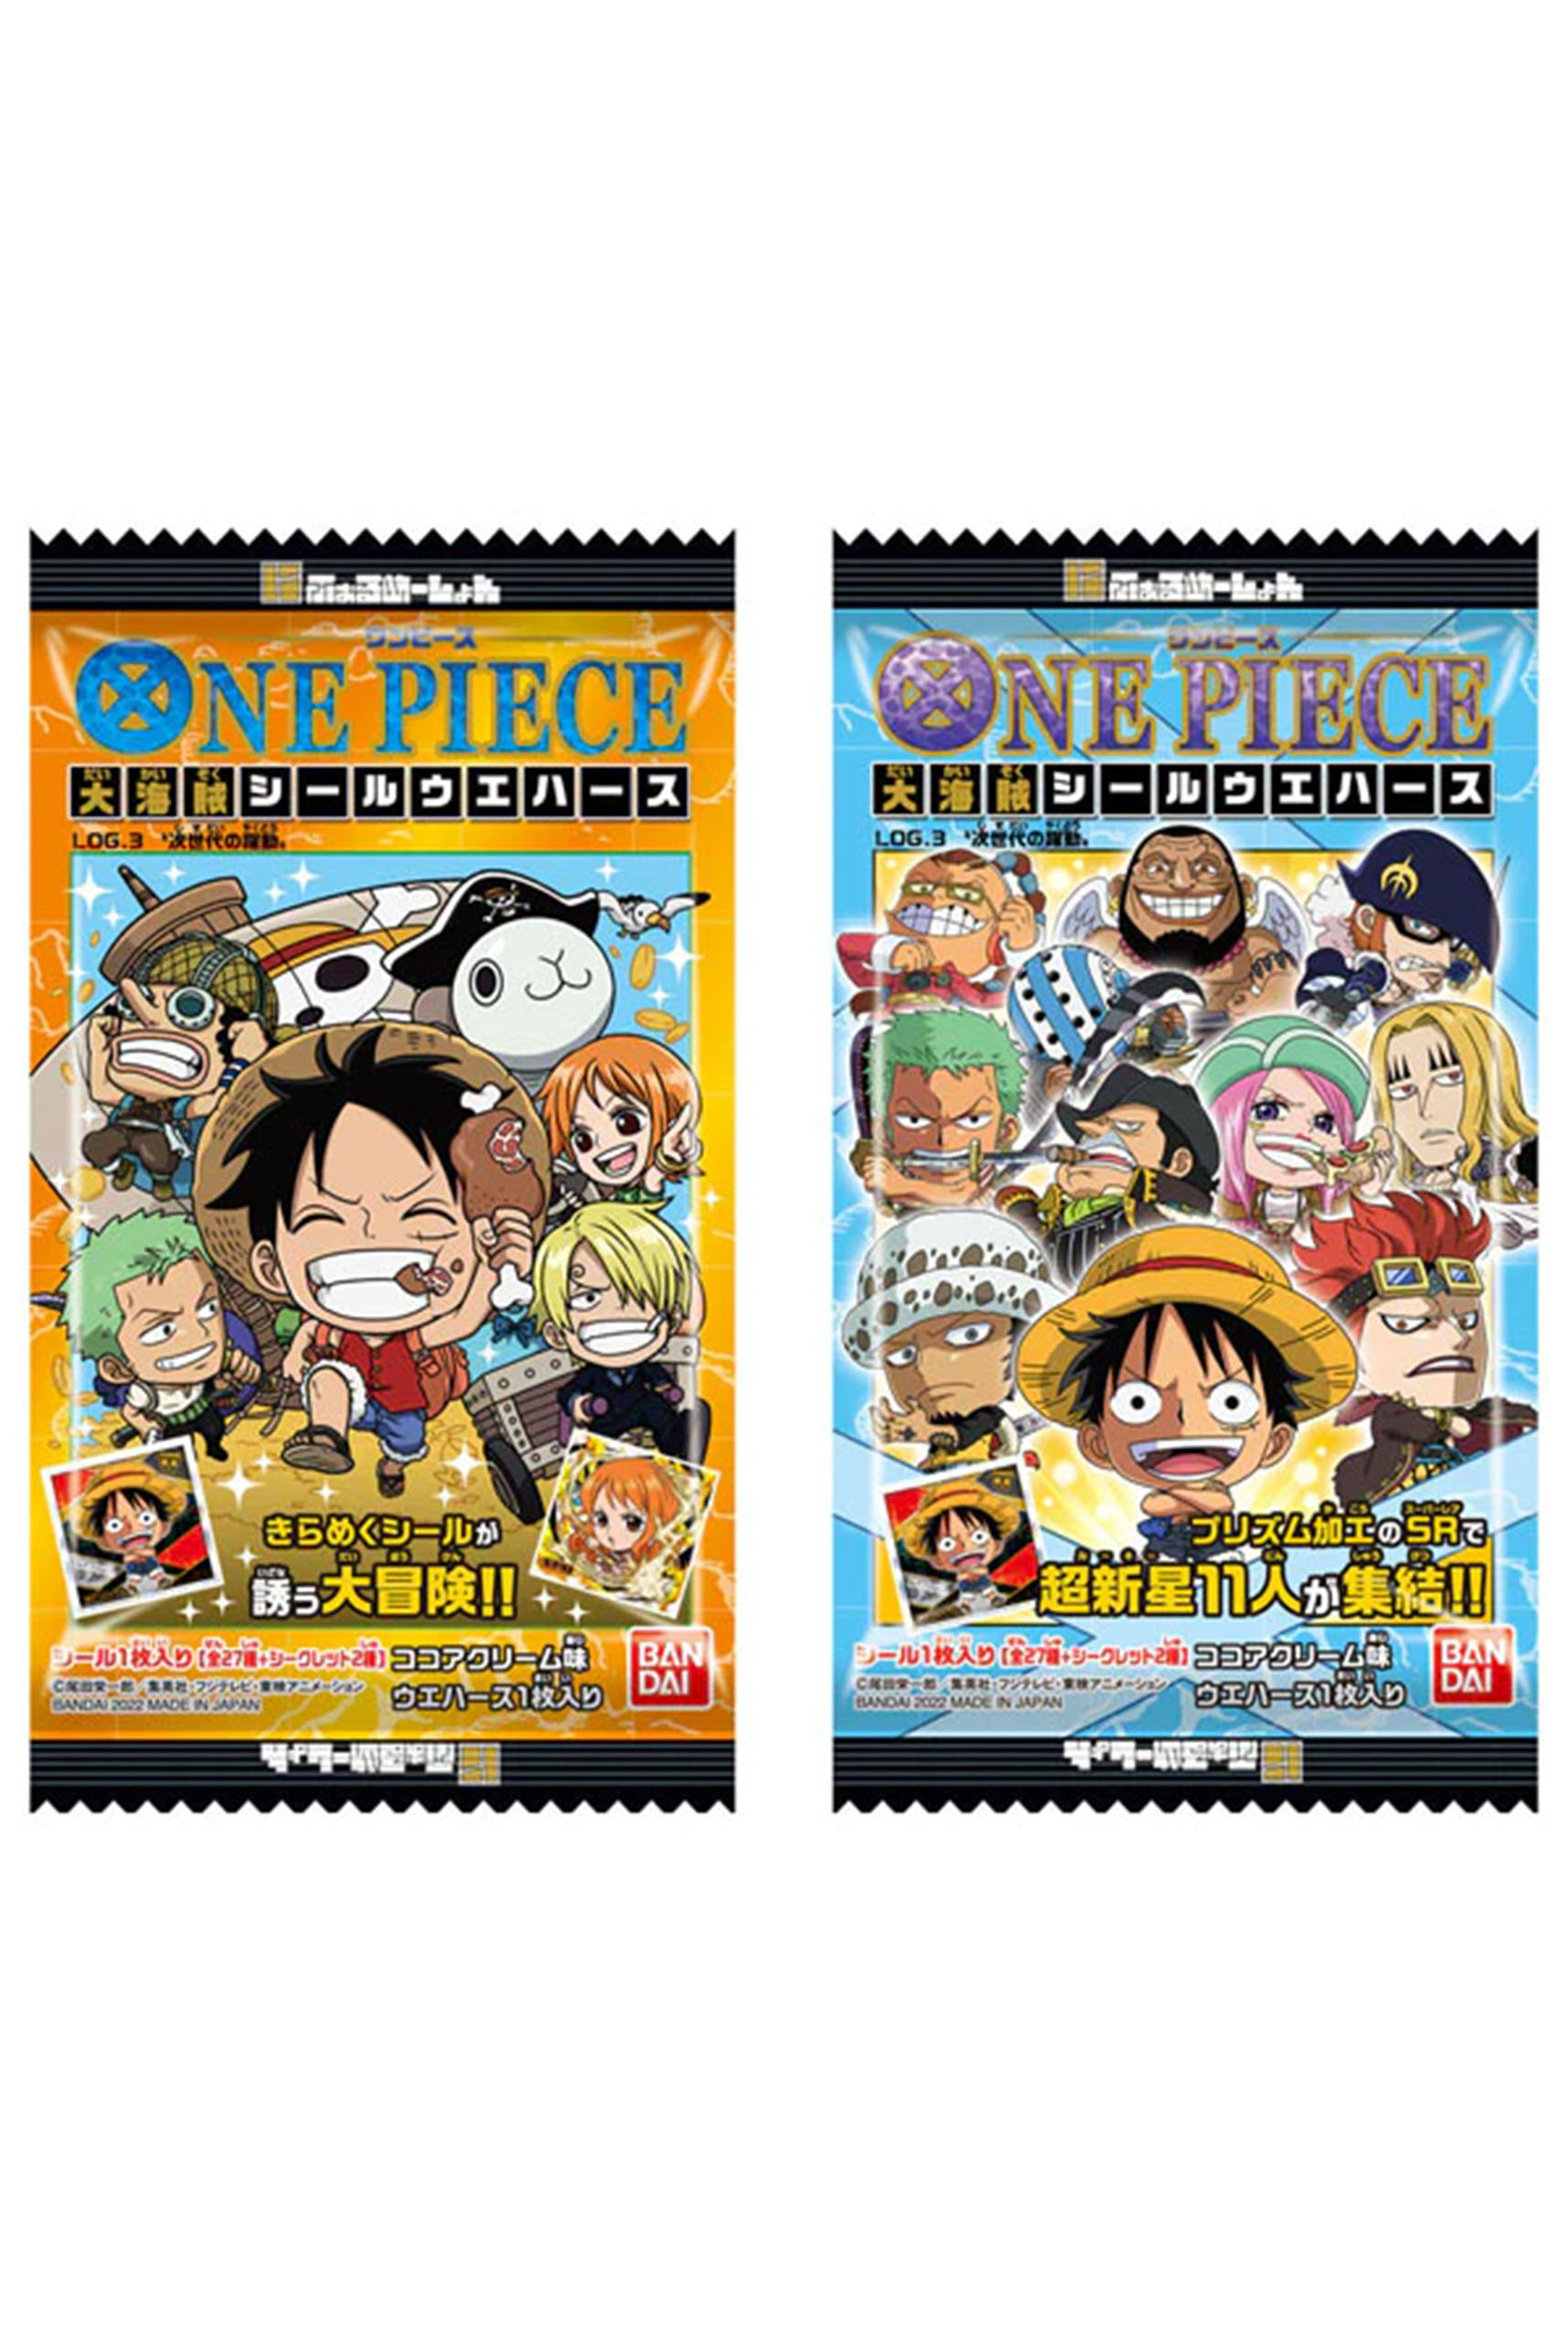 One Piece 2024: Được sản xuất và cung cấp bởi một đội ngũ kinh nguyện và tận tình nhất, One Piece sẽ trở lại với thành công đến nơi xa. Không chỉ được đầu tư về nội dung mà còn cả về chất lượng âm thanh và hình ảnh. Hãy sẵn sàng cho những cảm xúc đến nghẹt thở, những bất ngờ nảy sinh và những kỉ niệm lưu luyến.